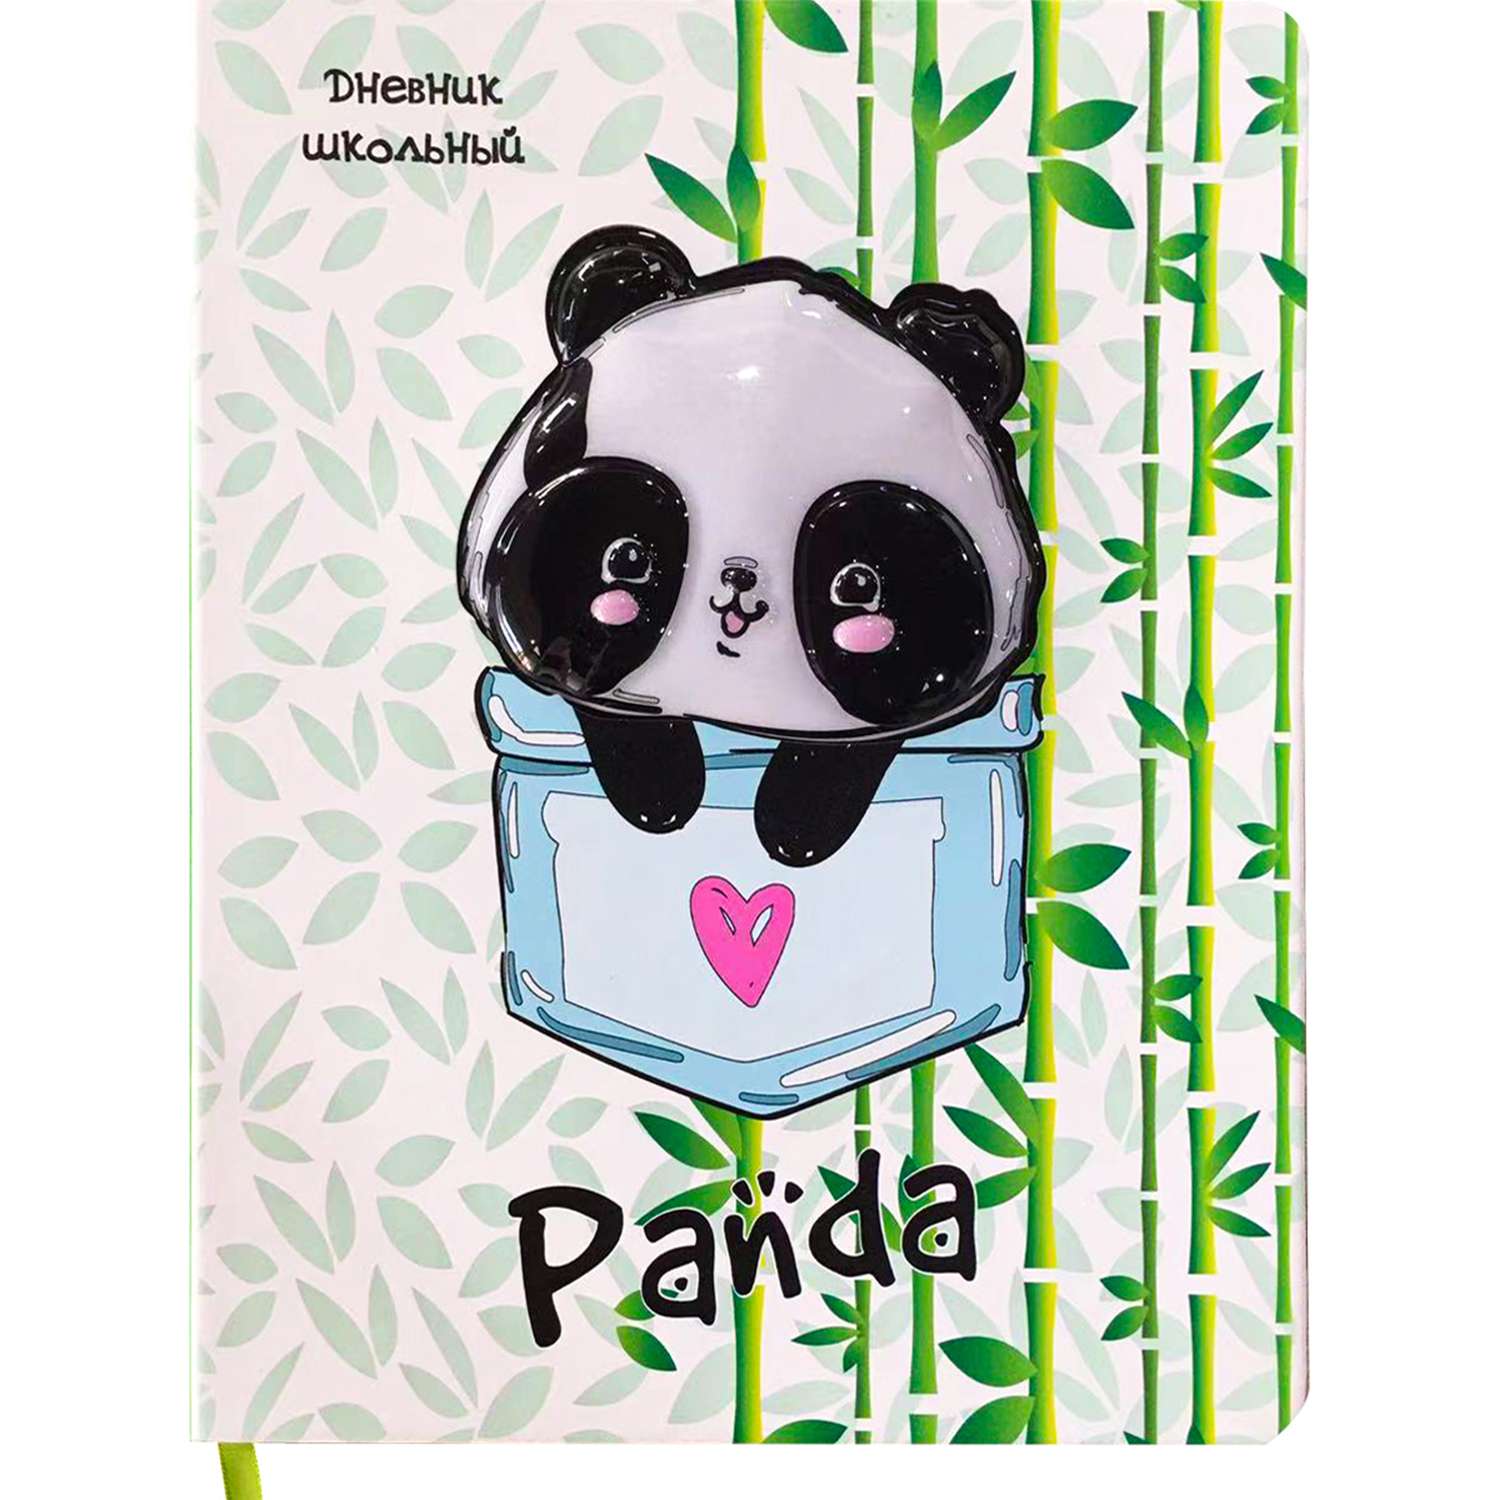 Дневник школьный Prof-Press Little panda 48 листов кожзам 1-11 класс - фото 2